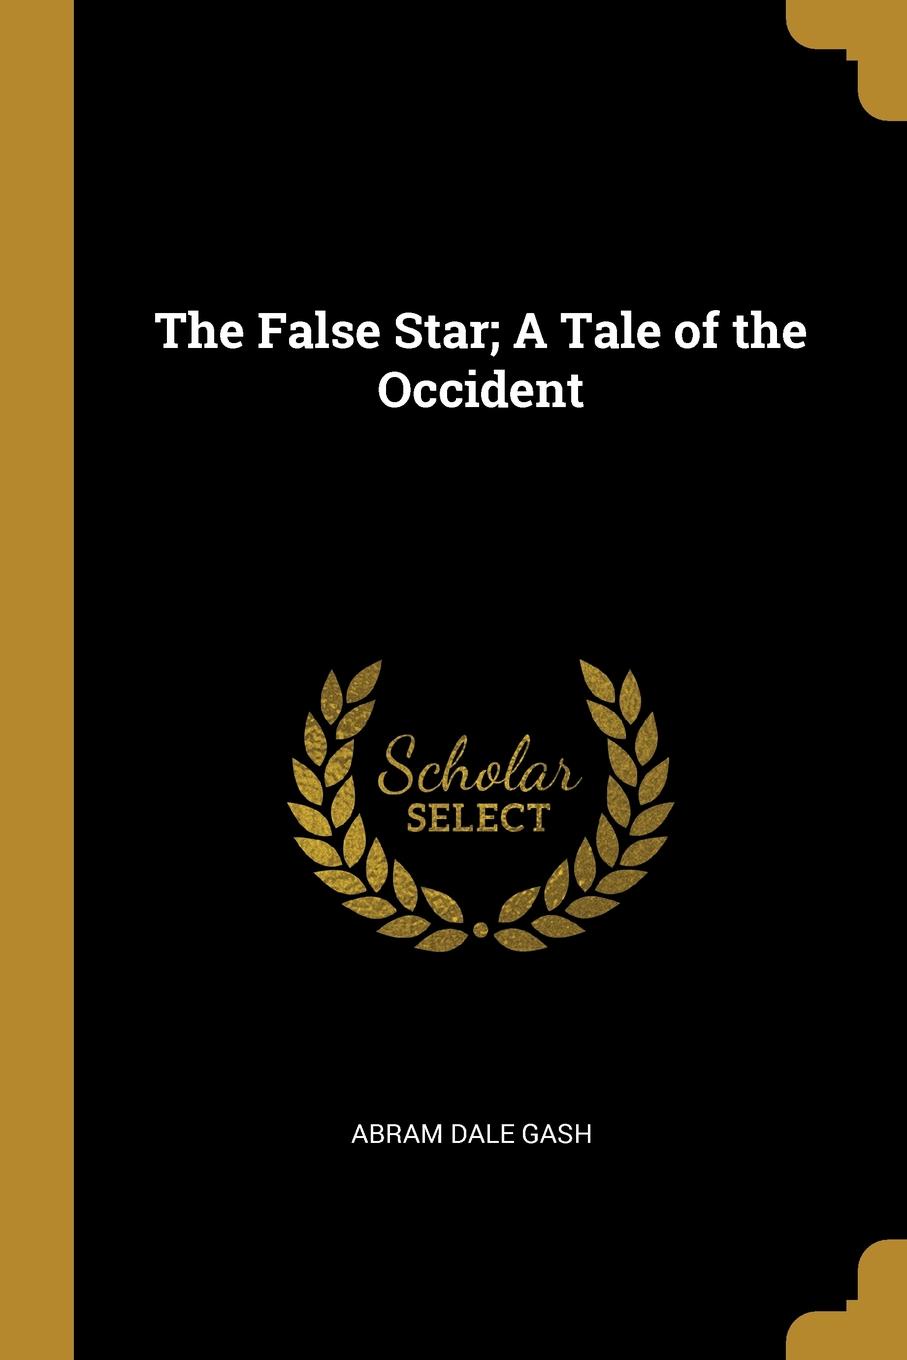 False star